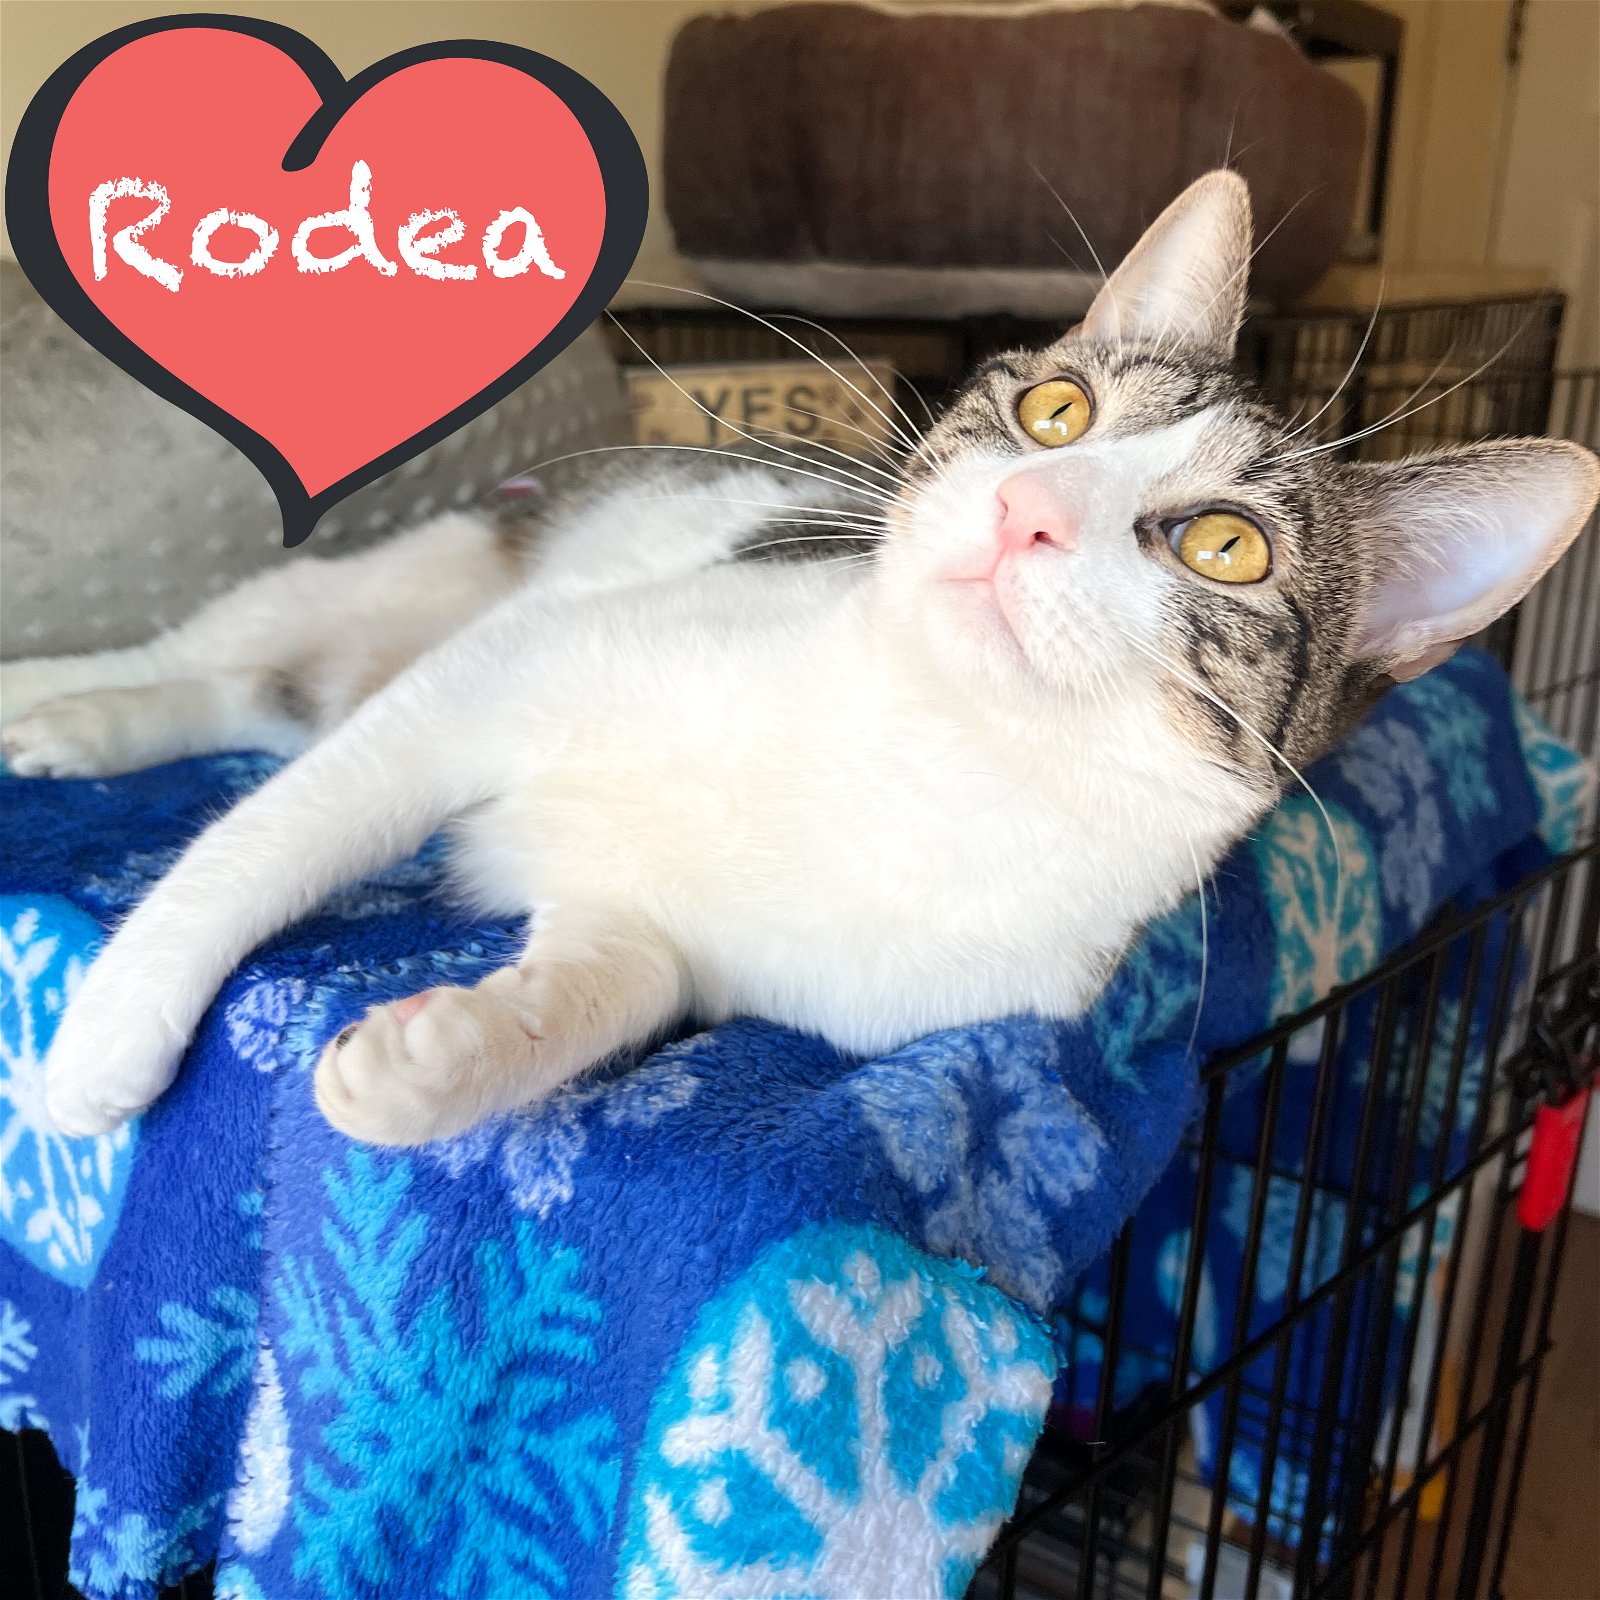 adoptable Cat in Bronx, NY named Rodea